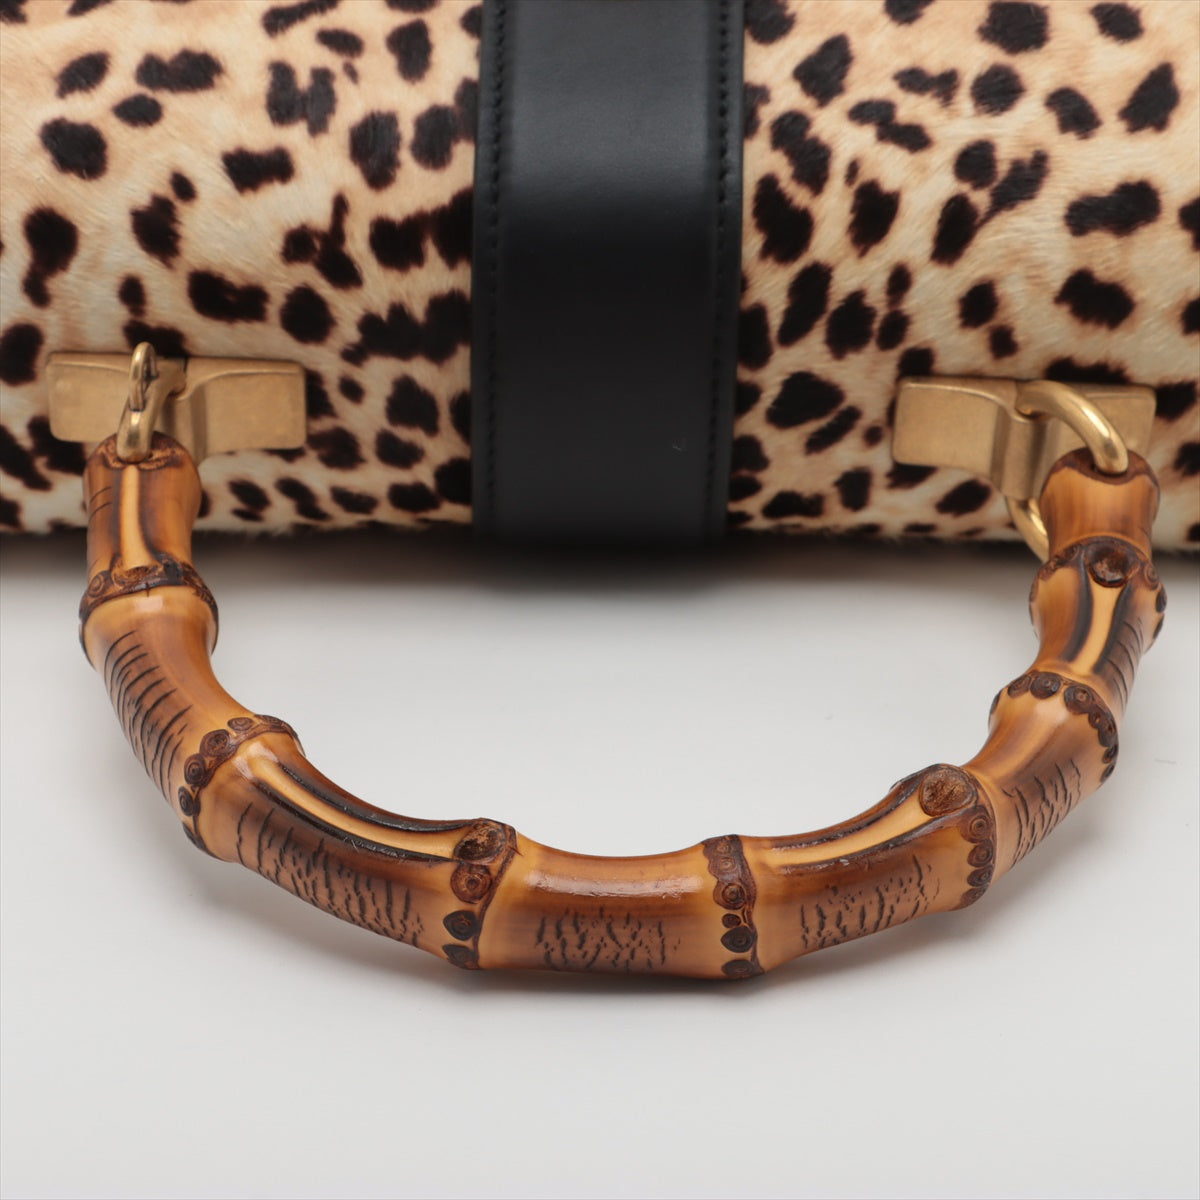 Gucci Dionysus Leather & unborn calf 2way handbag Multicolor 448075